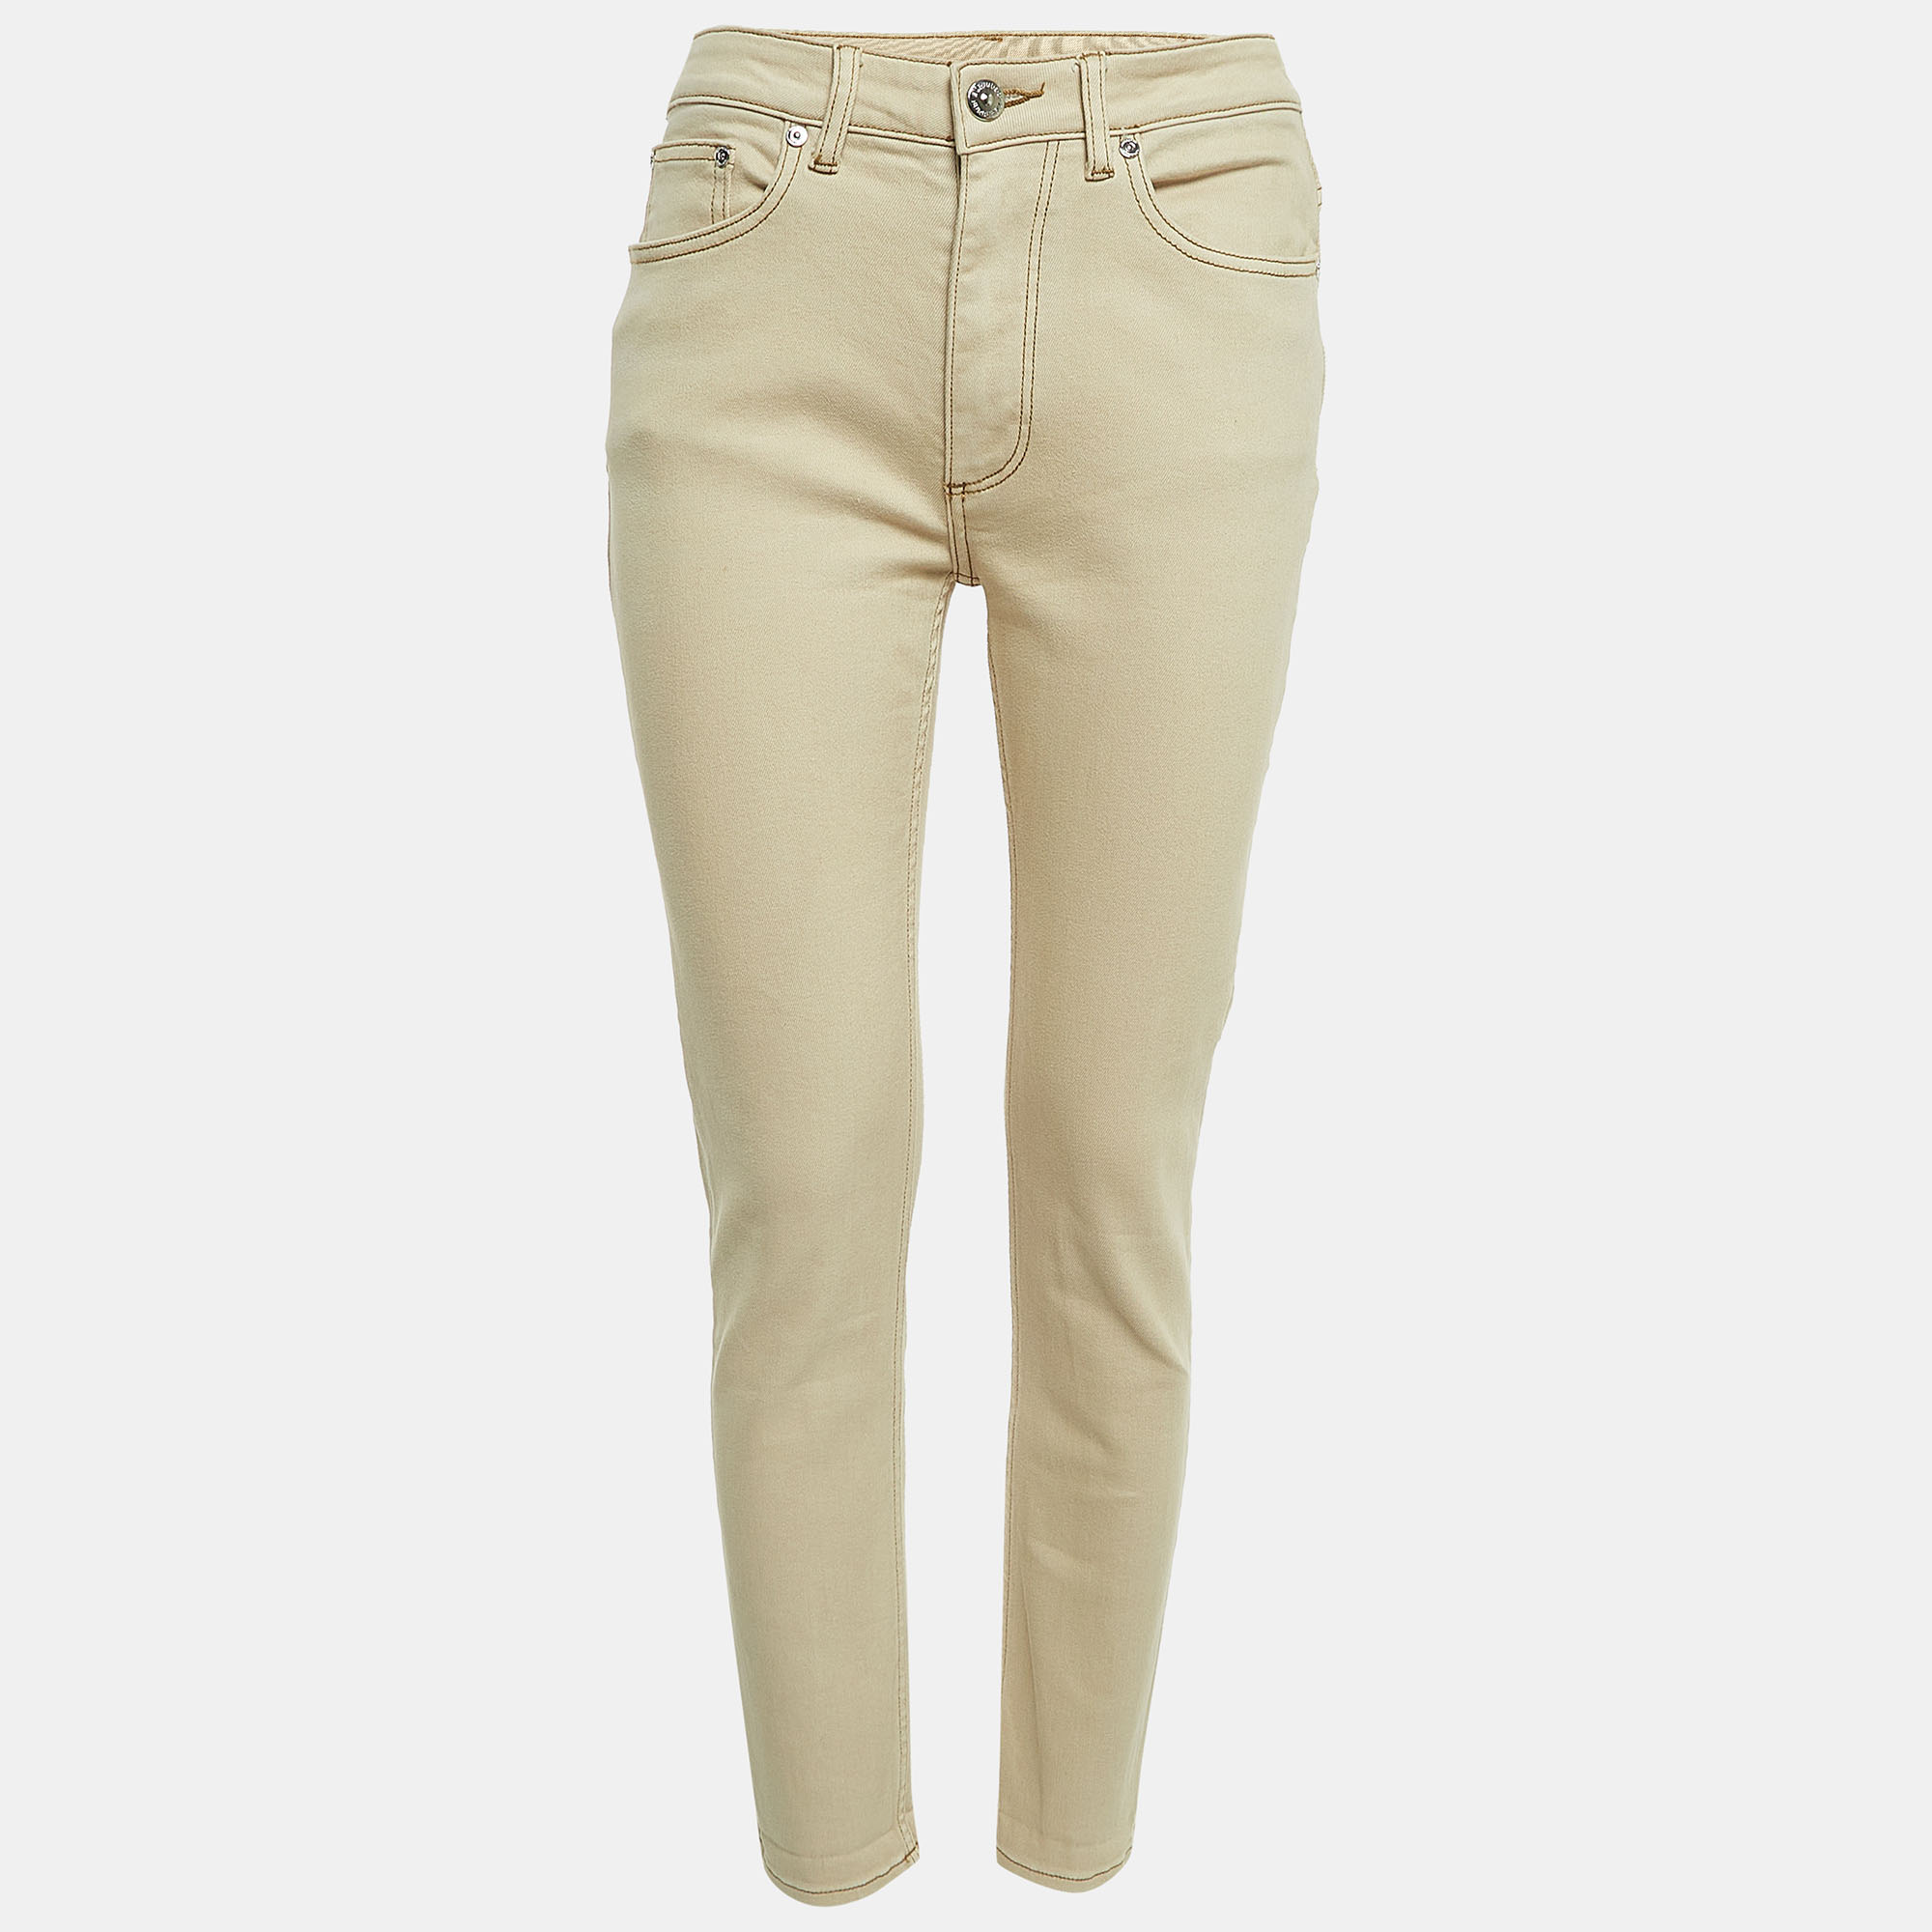 Burberry beige denim pocket detail skinny jeans s waist 27"